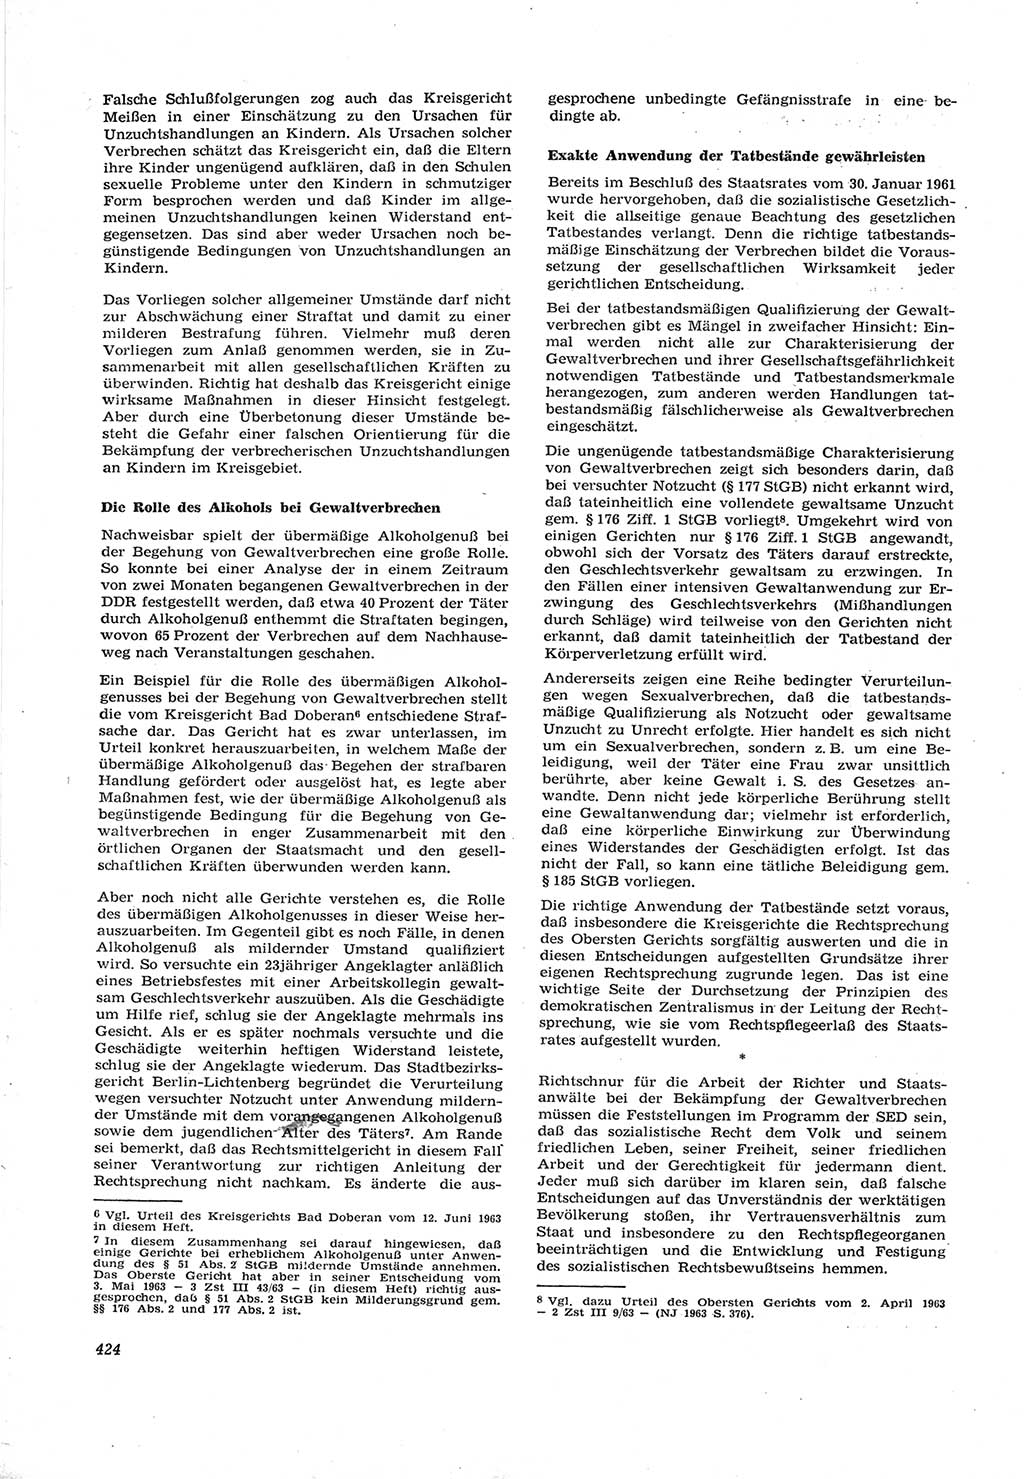 Neue Justiz (NJ), Zeitschrift für Recht und Rechtswissenschaft [Deutsche Demokratische Republik (DDR)], 17. Jahrgang 1963, Seite 424 (NJ DDR 1963, S. 424)